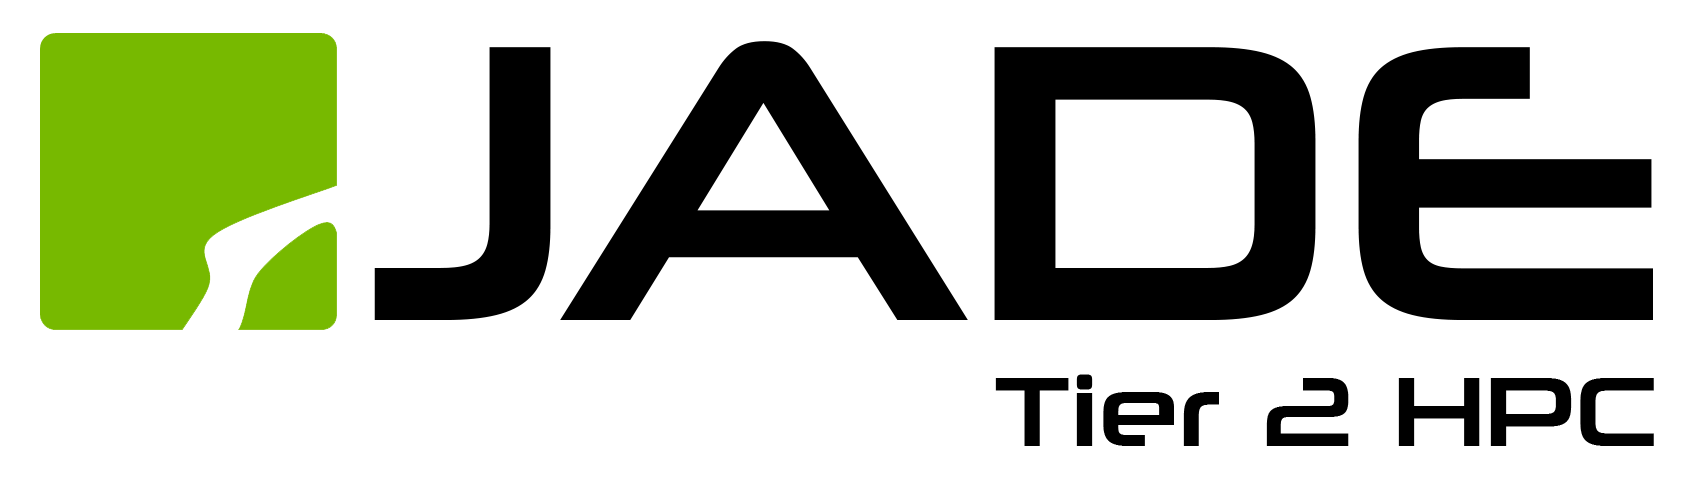 JADE logo